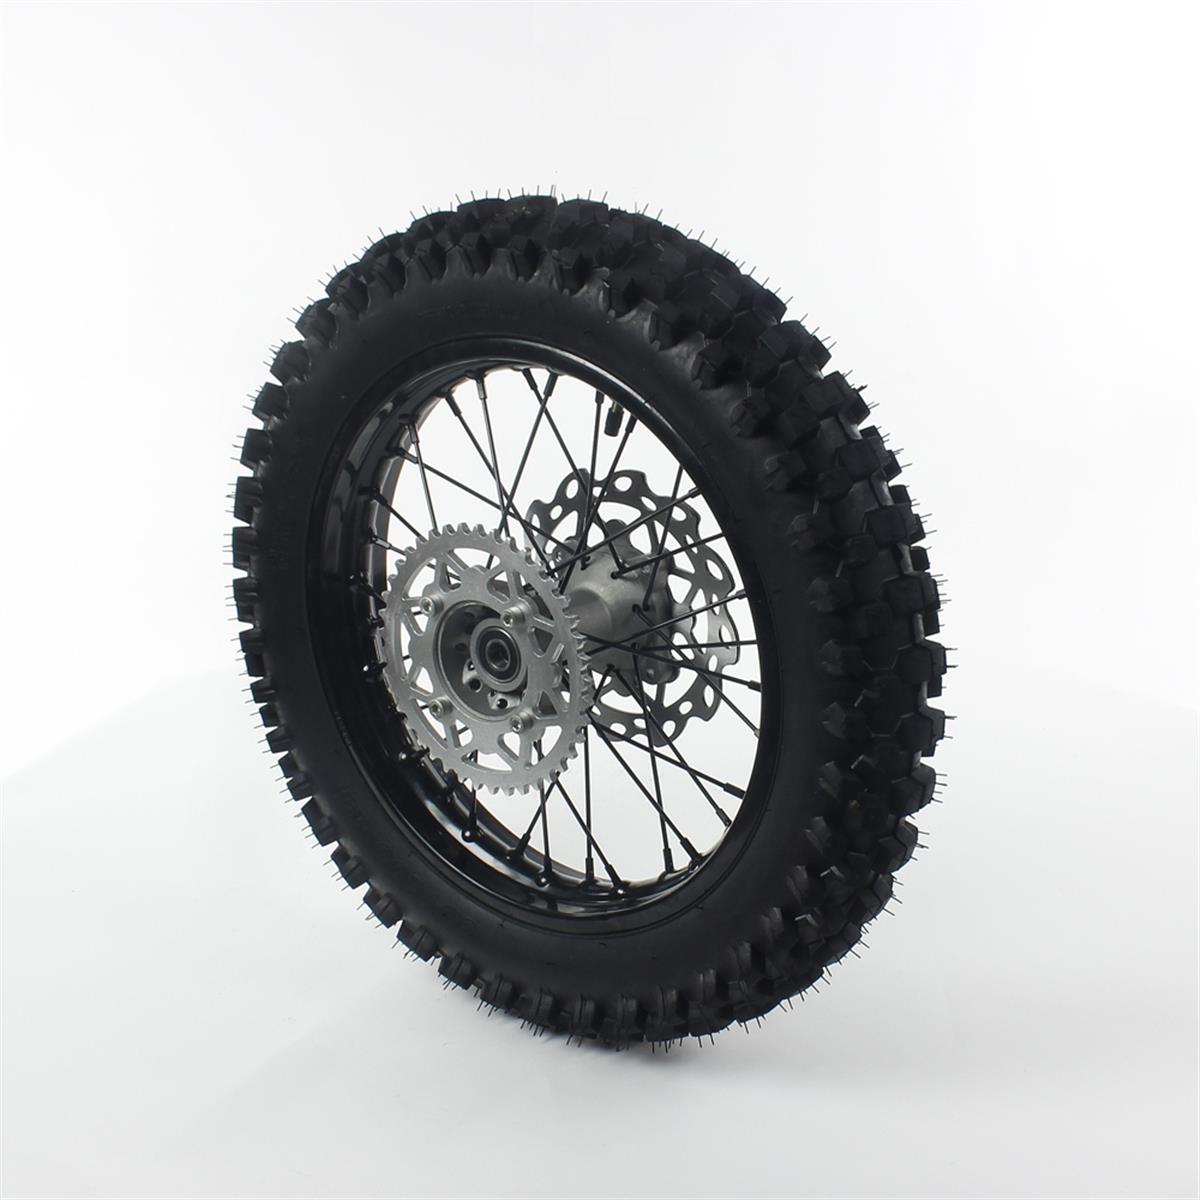 roue-complete-arriere-acier-avec-pneu-guangli-noire-14-15